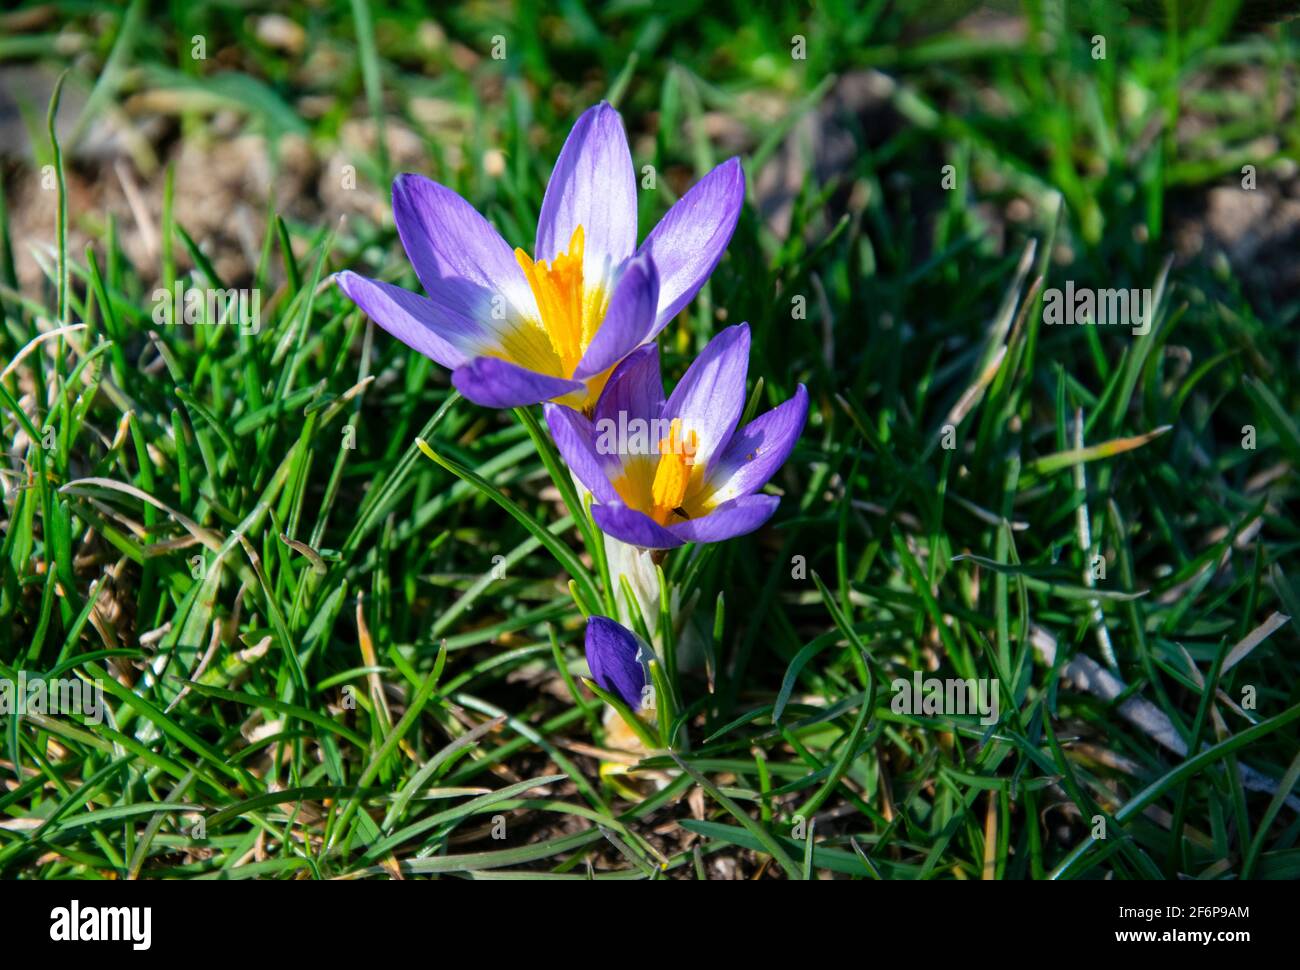 Wunderschöne frühlingshafte violette, weiße, gelbe Krokusse, riesige Krokusse auf einem grünen Rasen. Frühlingsblumen. Primeln. Anfang Frühling. Stockfoto